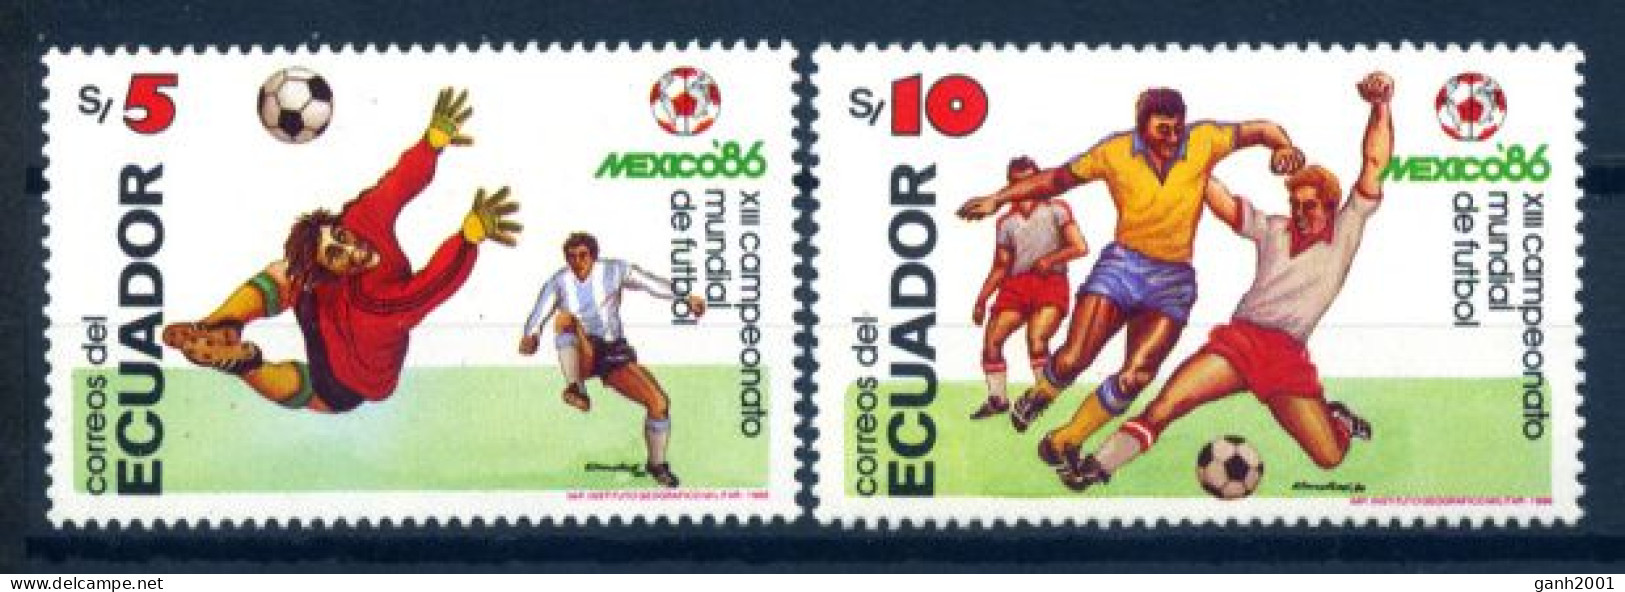 Ecuador 1986 / Football Soccer FIFA World Cup Mexico MNH Fútbol Copa Mundial / Hf04  32-2 - 1986 – Mexiko